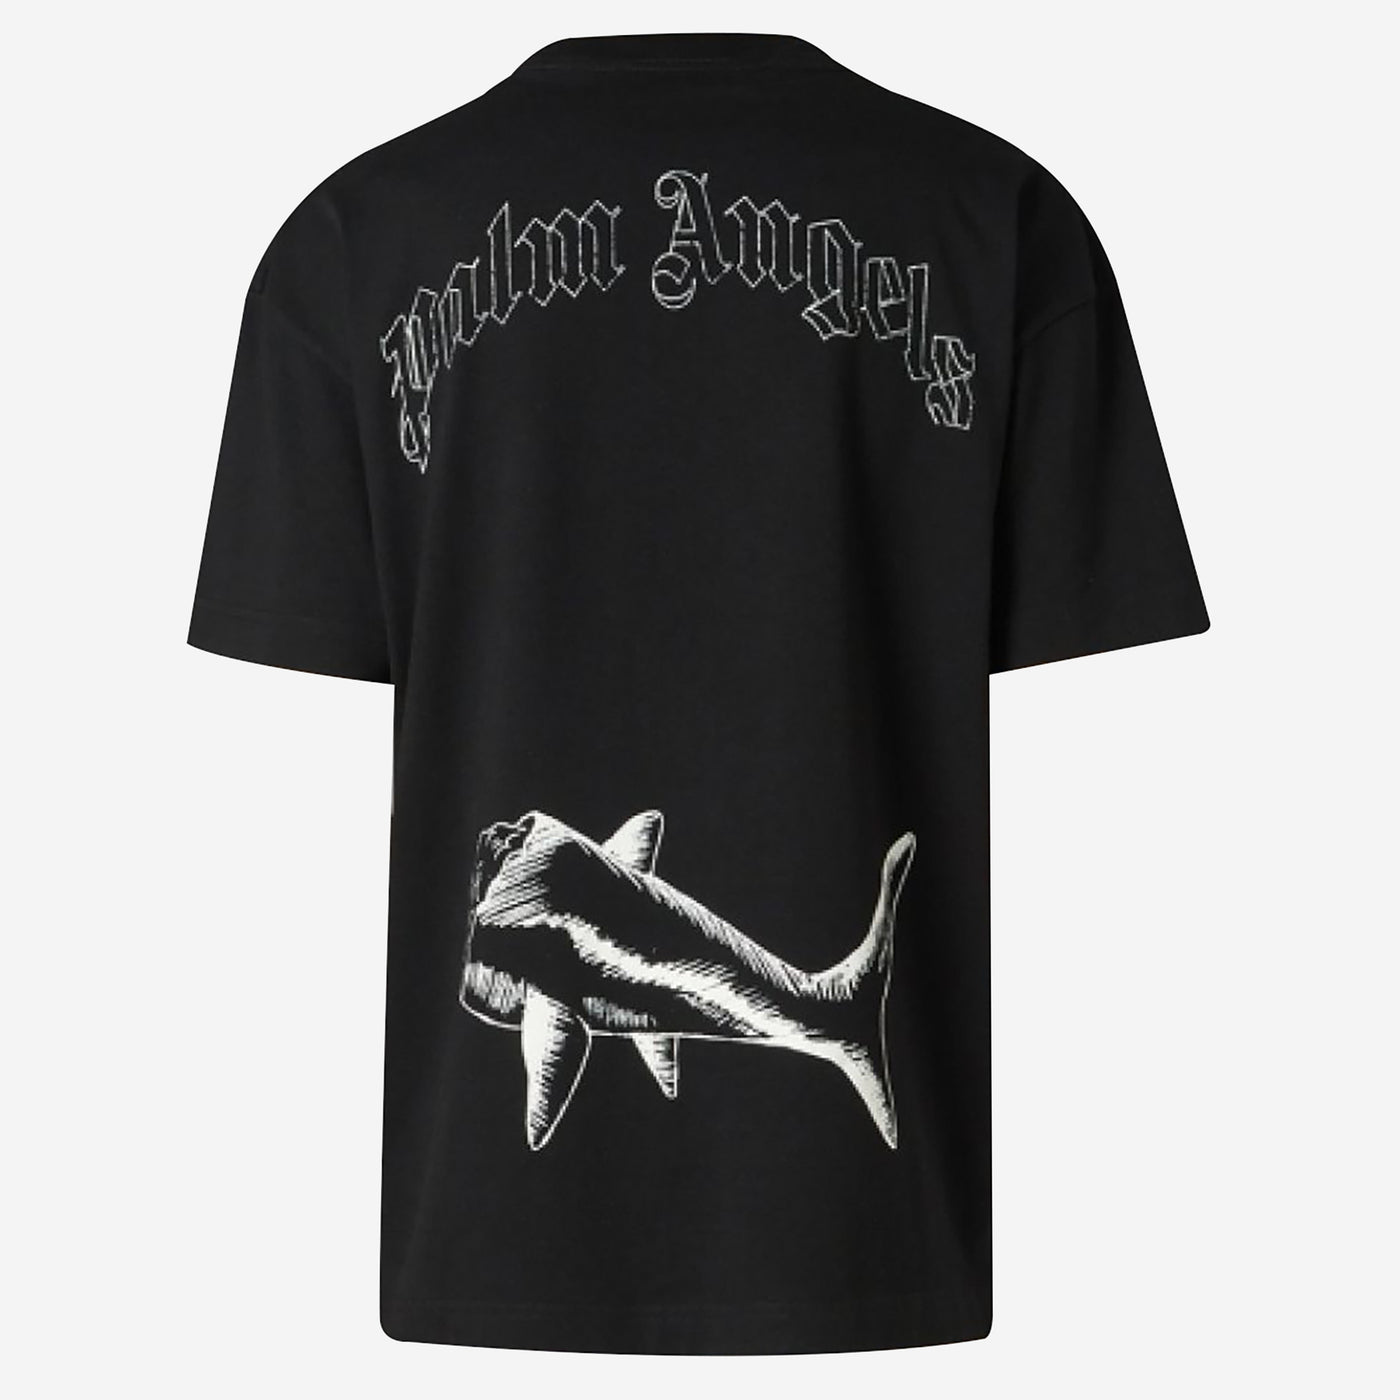 Palm Angels Broken Shark Classic T-Shirt